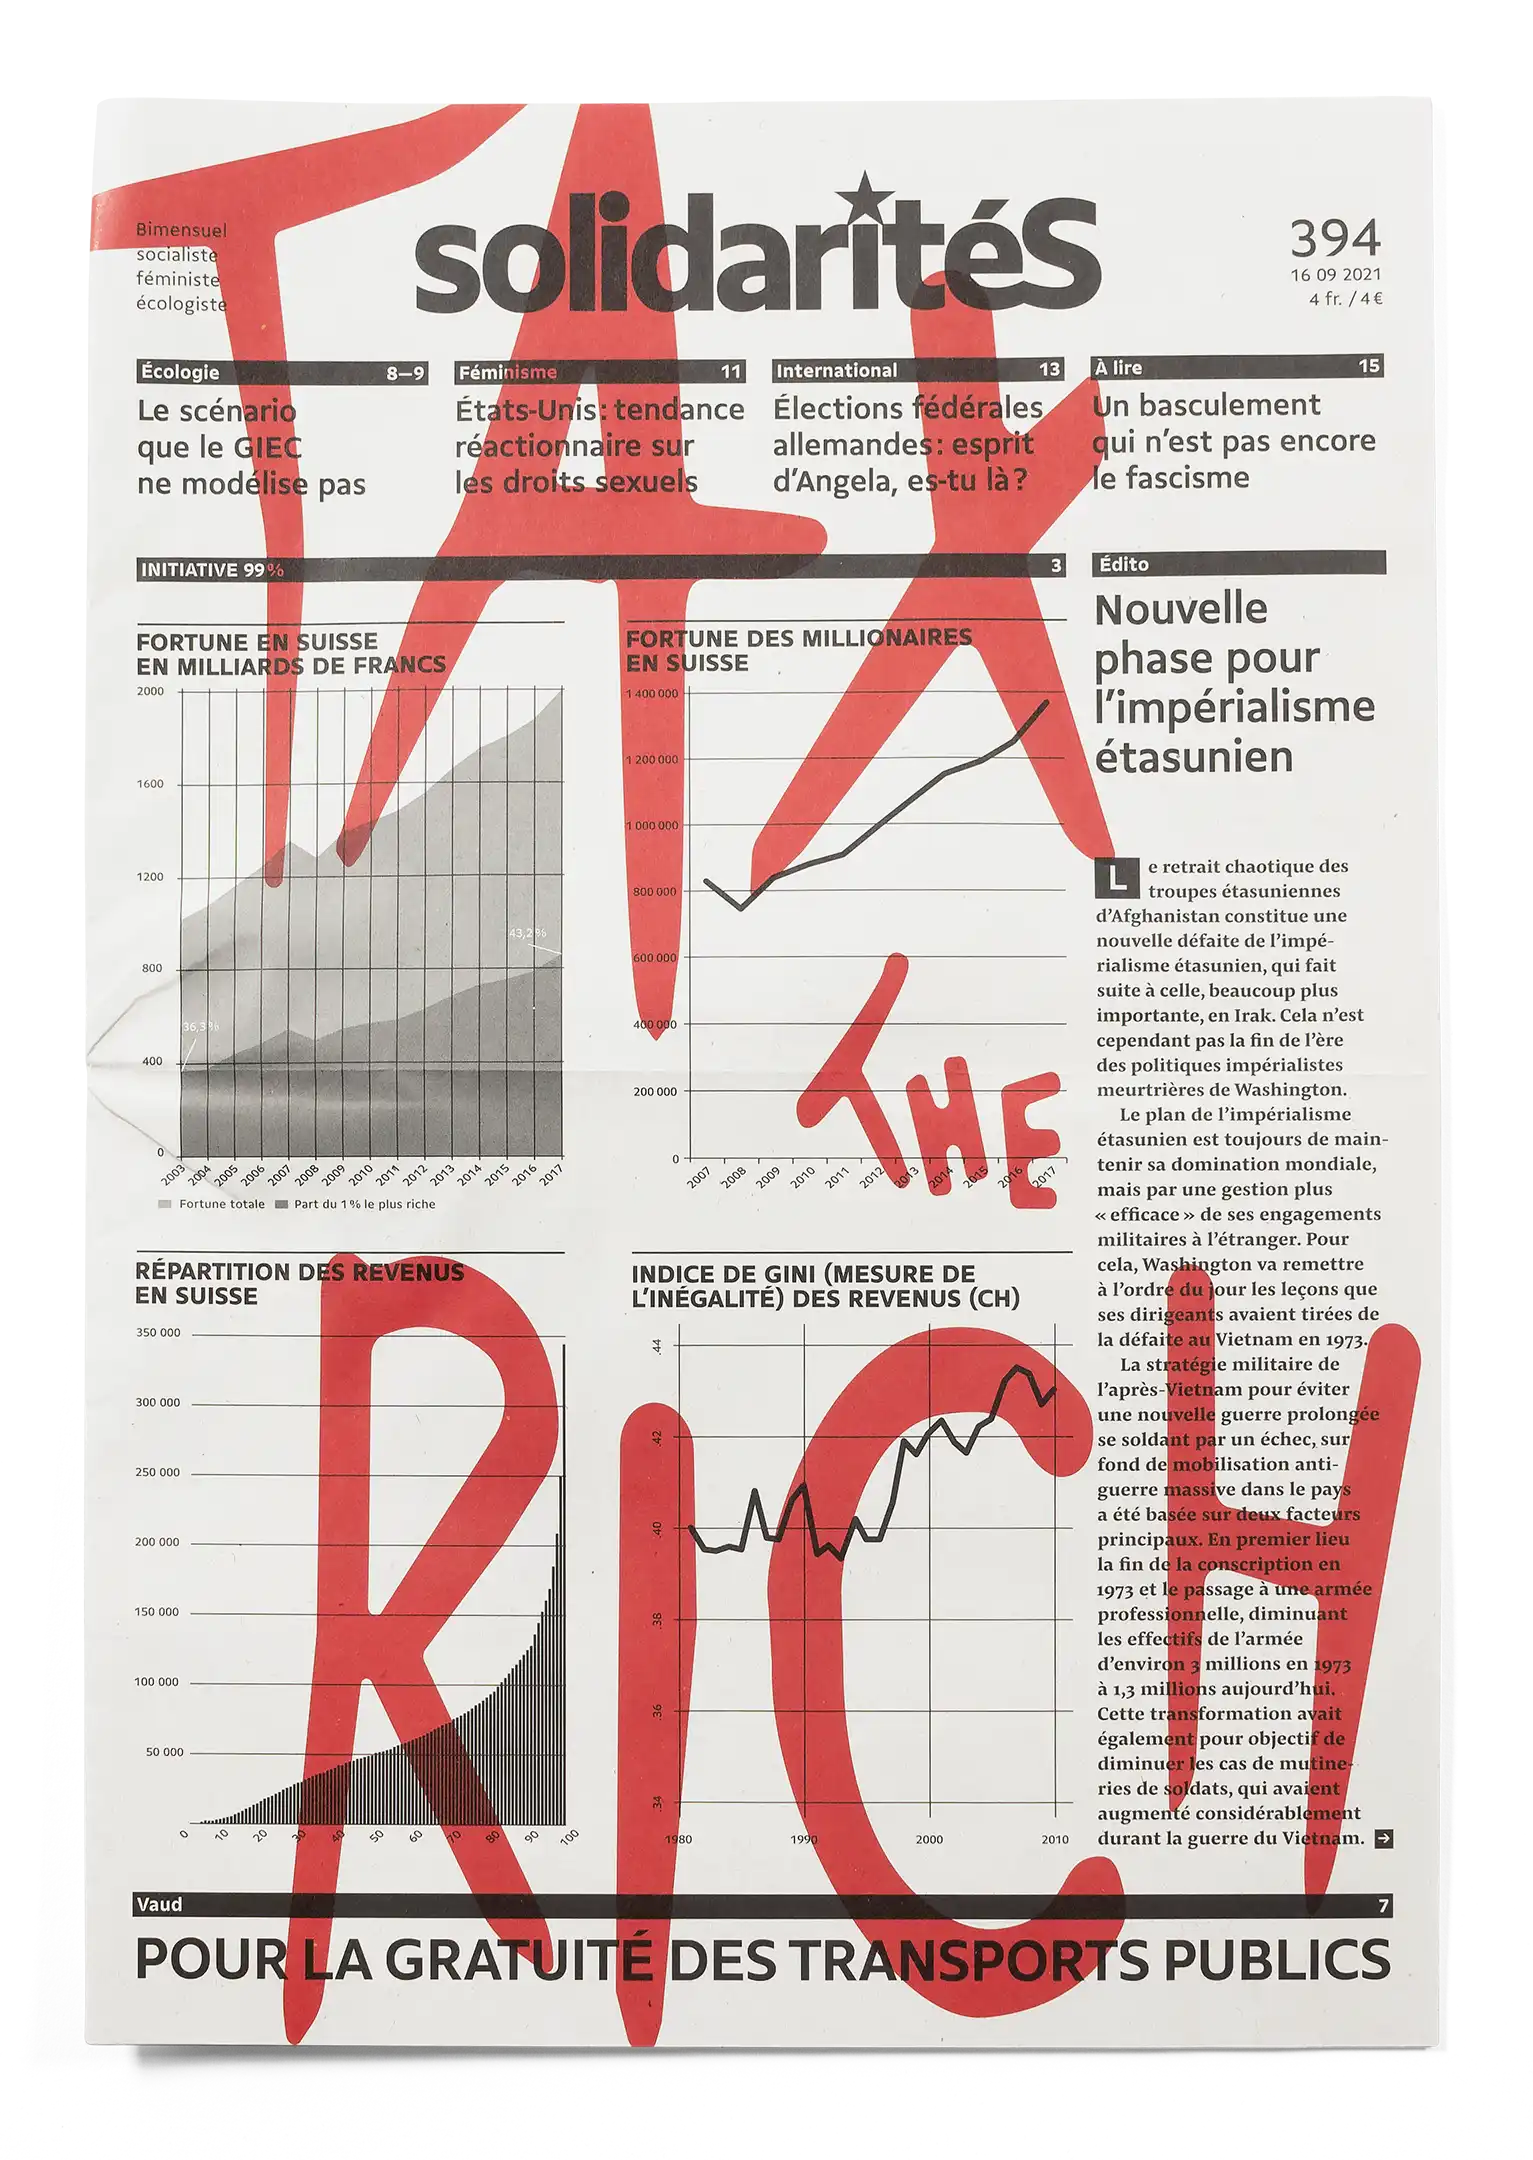 Couverture du numéro 394 du journal solidaritéS avec le slogan «tax the rich» repris de la robe d’Alexandria Ocasio-Cortez